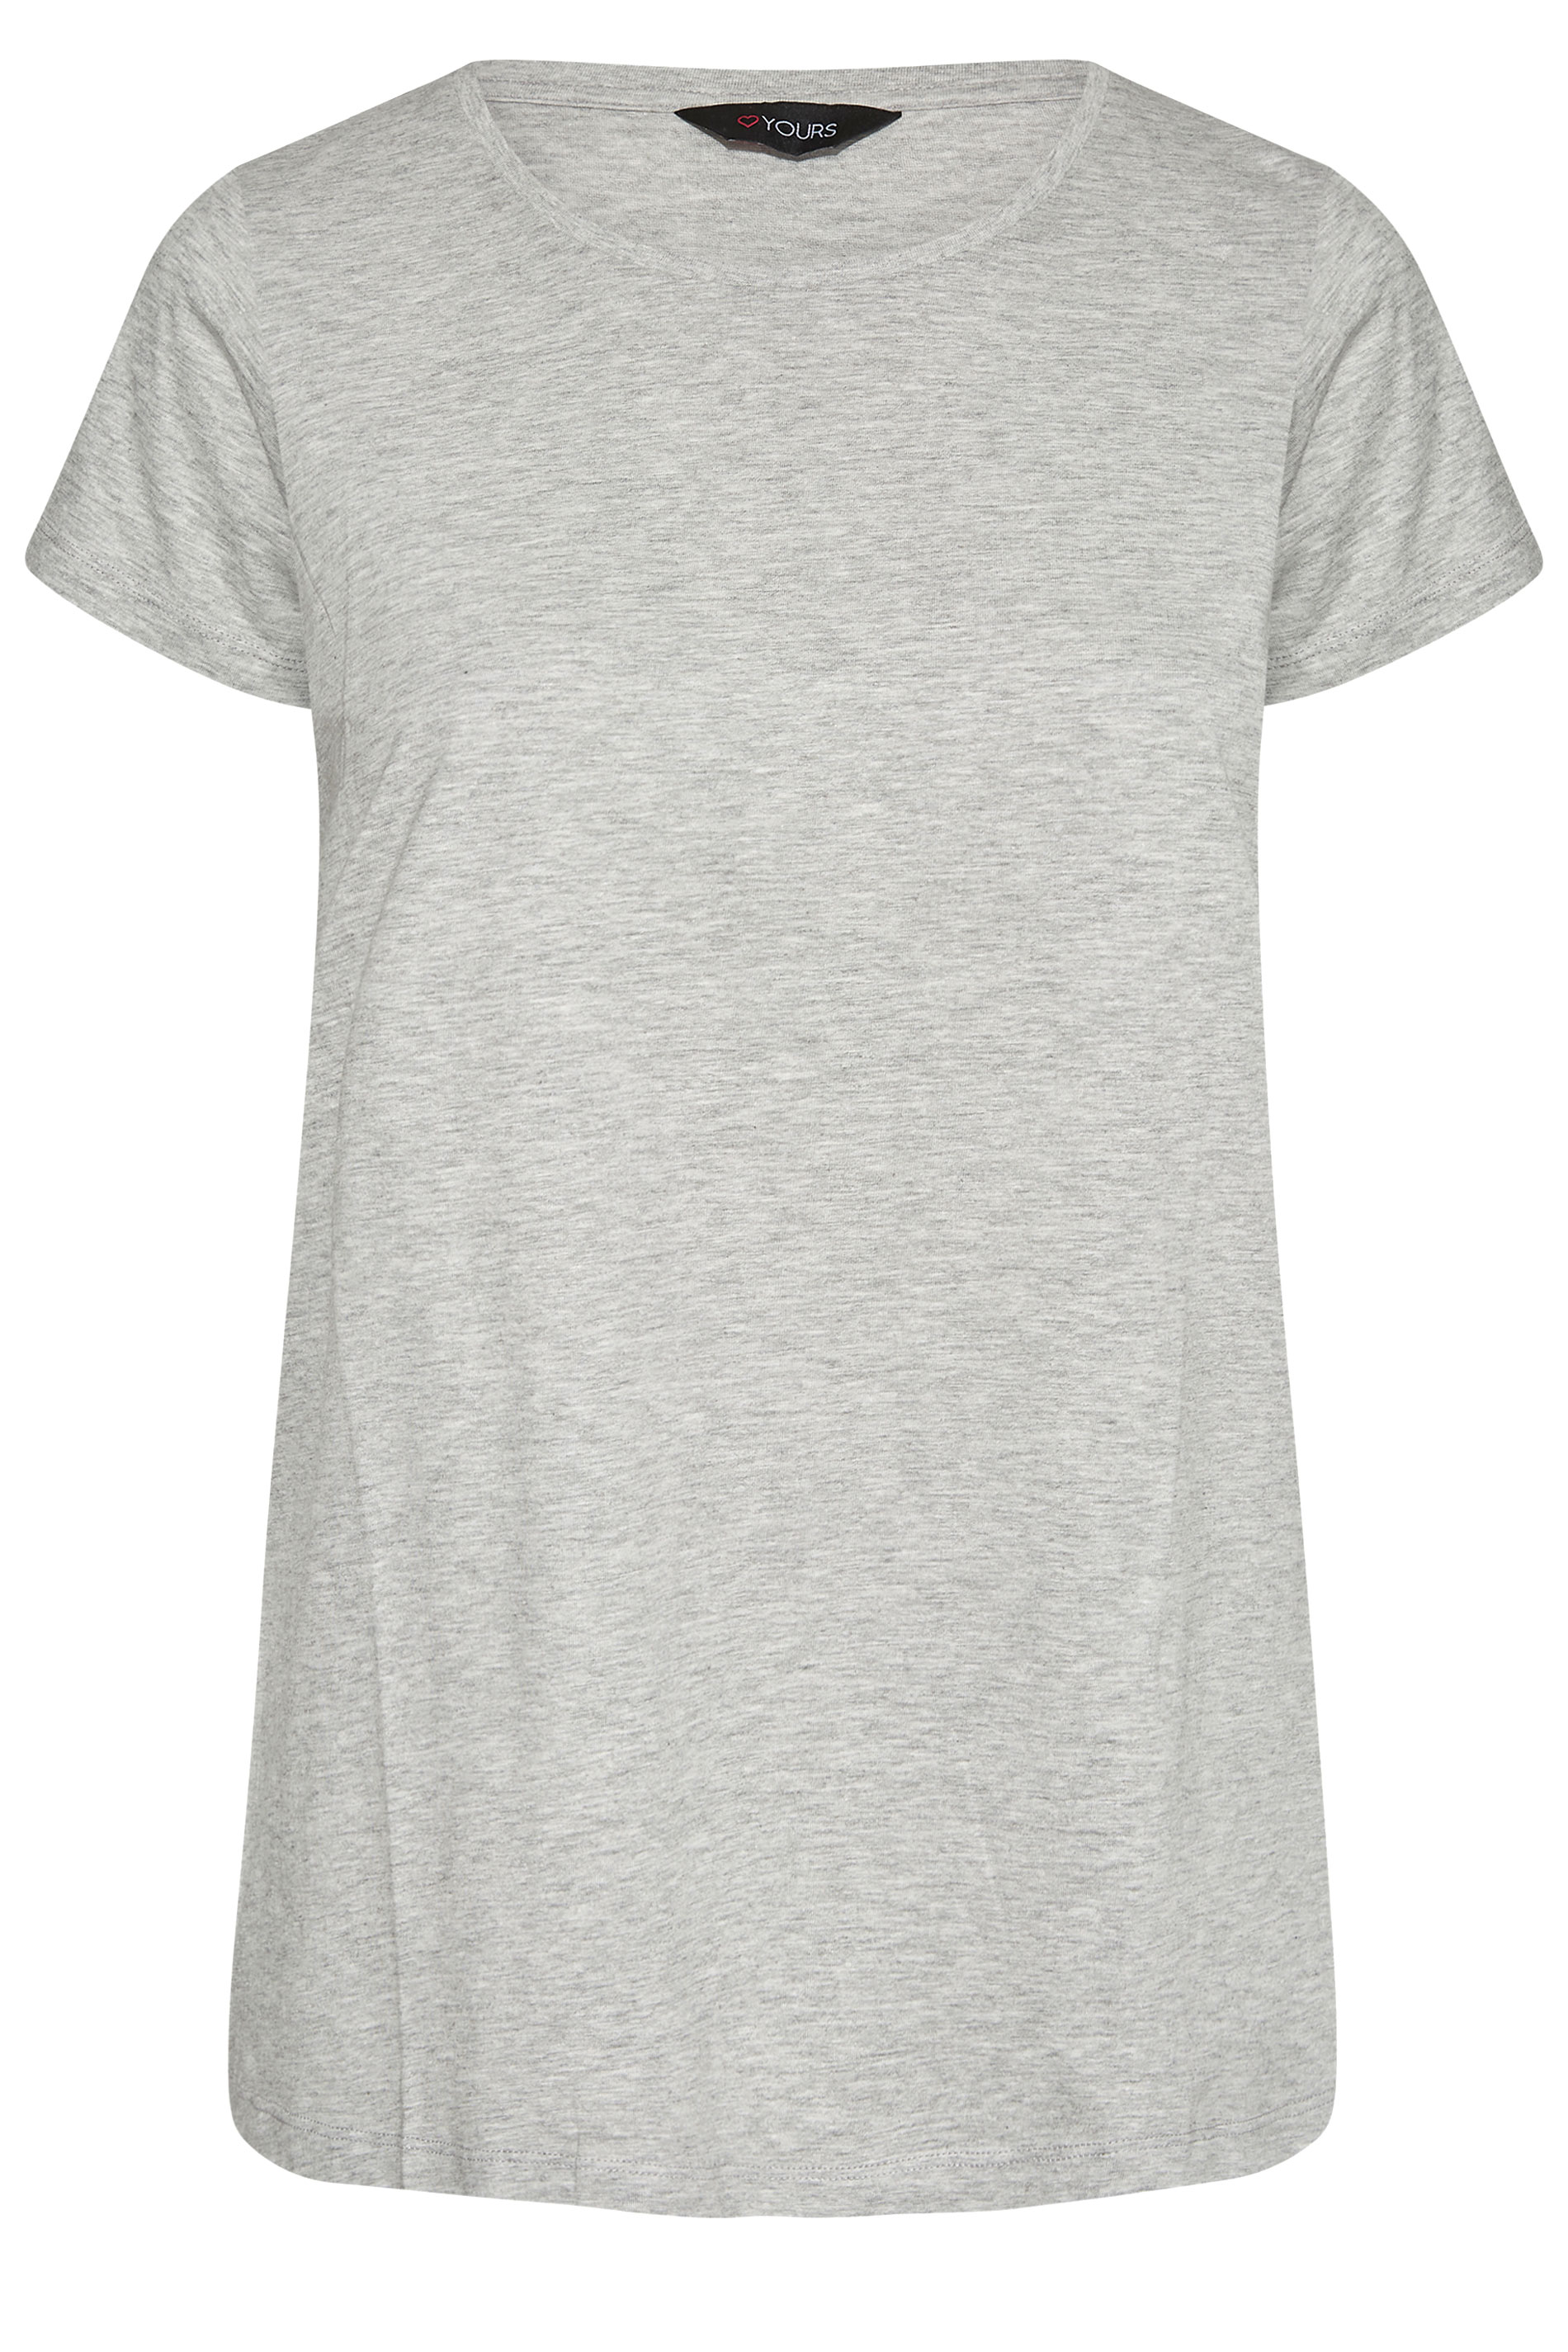 Grande taille  Tops Grande taille  T-Shirts Basiques & Débardeurs | T-Shirt Gris Clair en Jersey - DZ02553